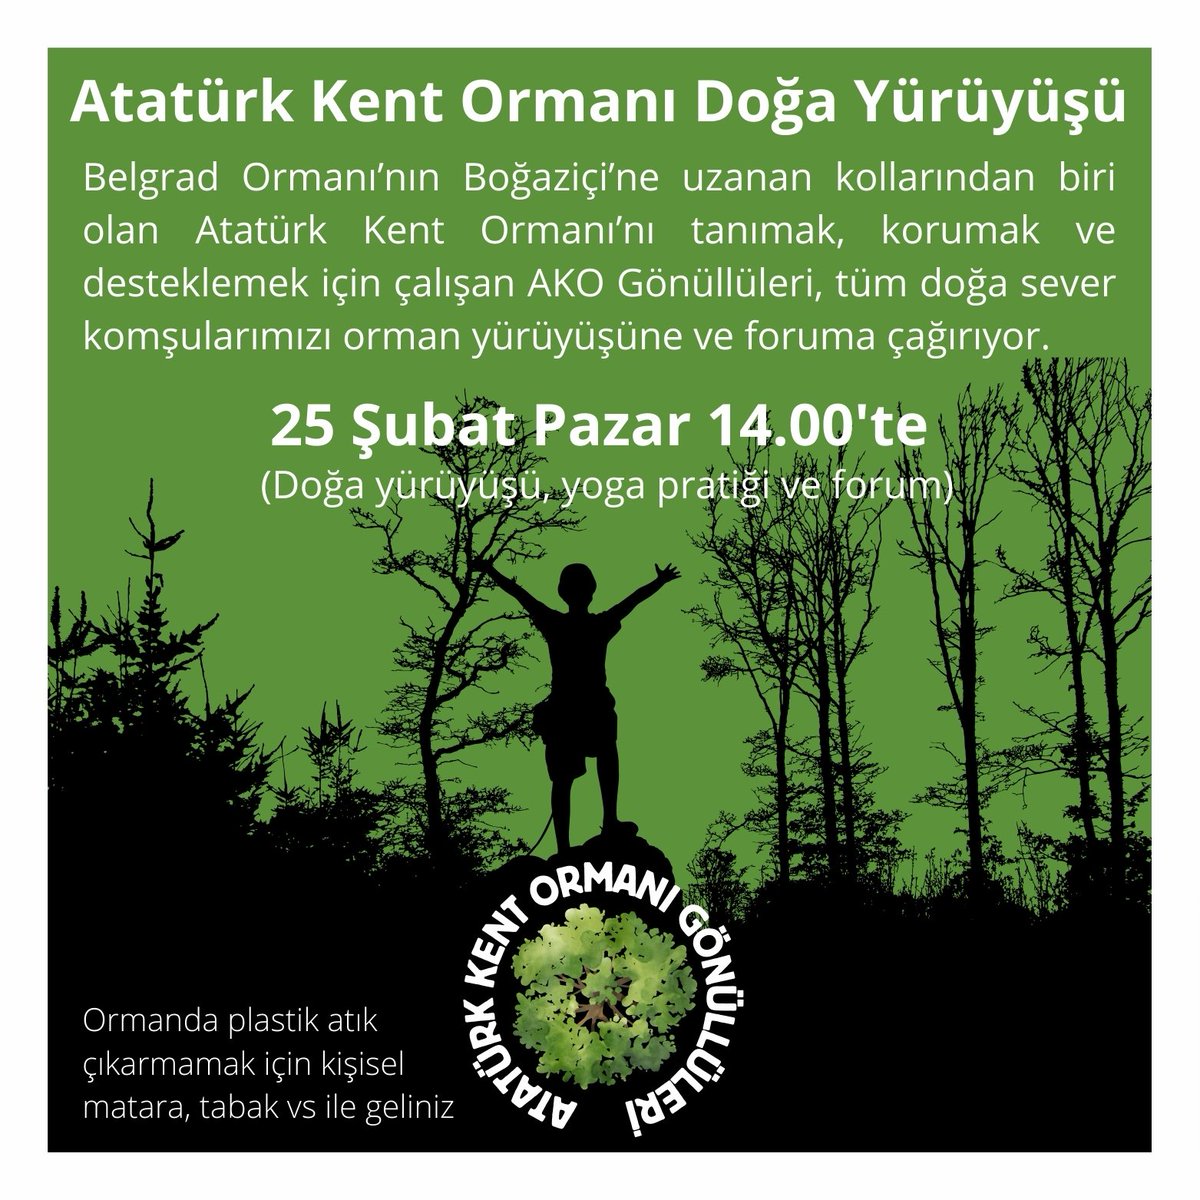 AKO Gönüllüleri, uzun yıllardır Kuzey Ormanları'nın savunduğumuz mevkilerinden biri olan Atatürk Kent Ormanı'nda doğa yürüyüşüne çağırıyor. Haydi nefes almaya, bahara hazırlanmaya💚🐝